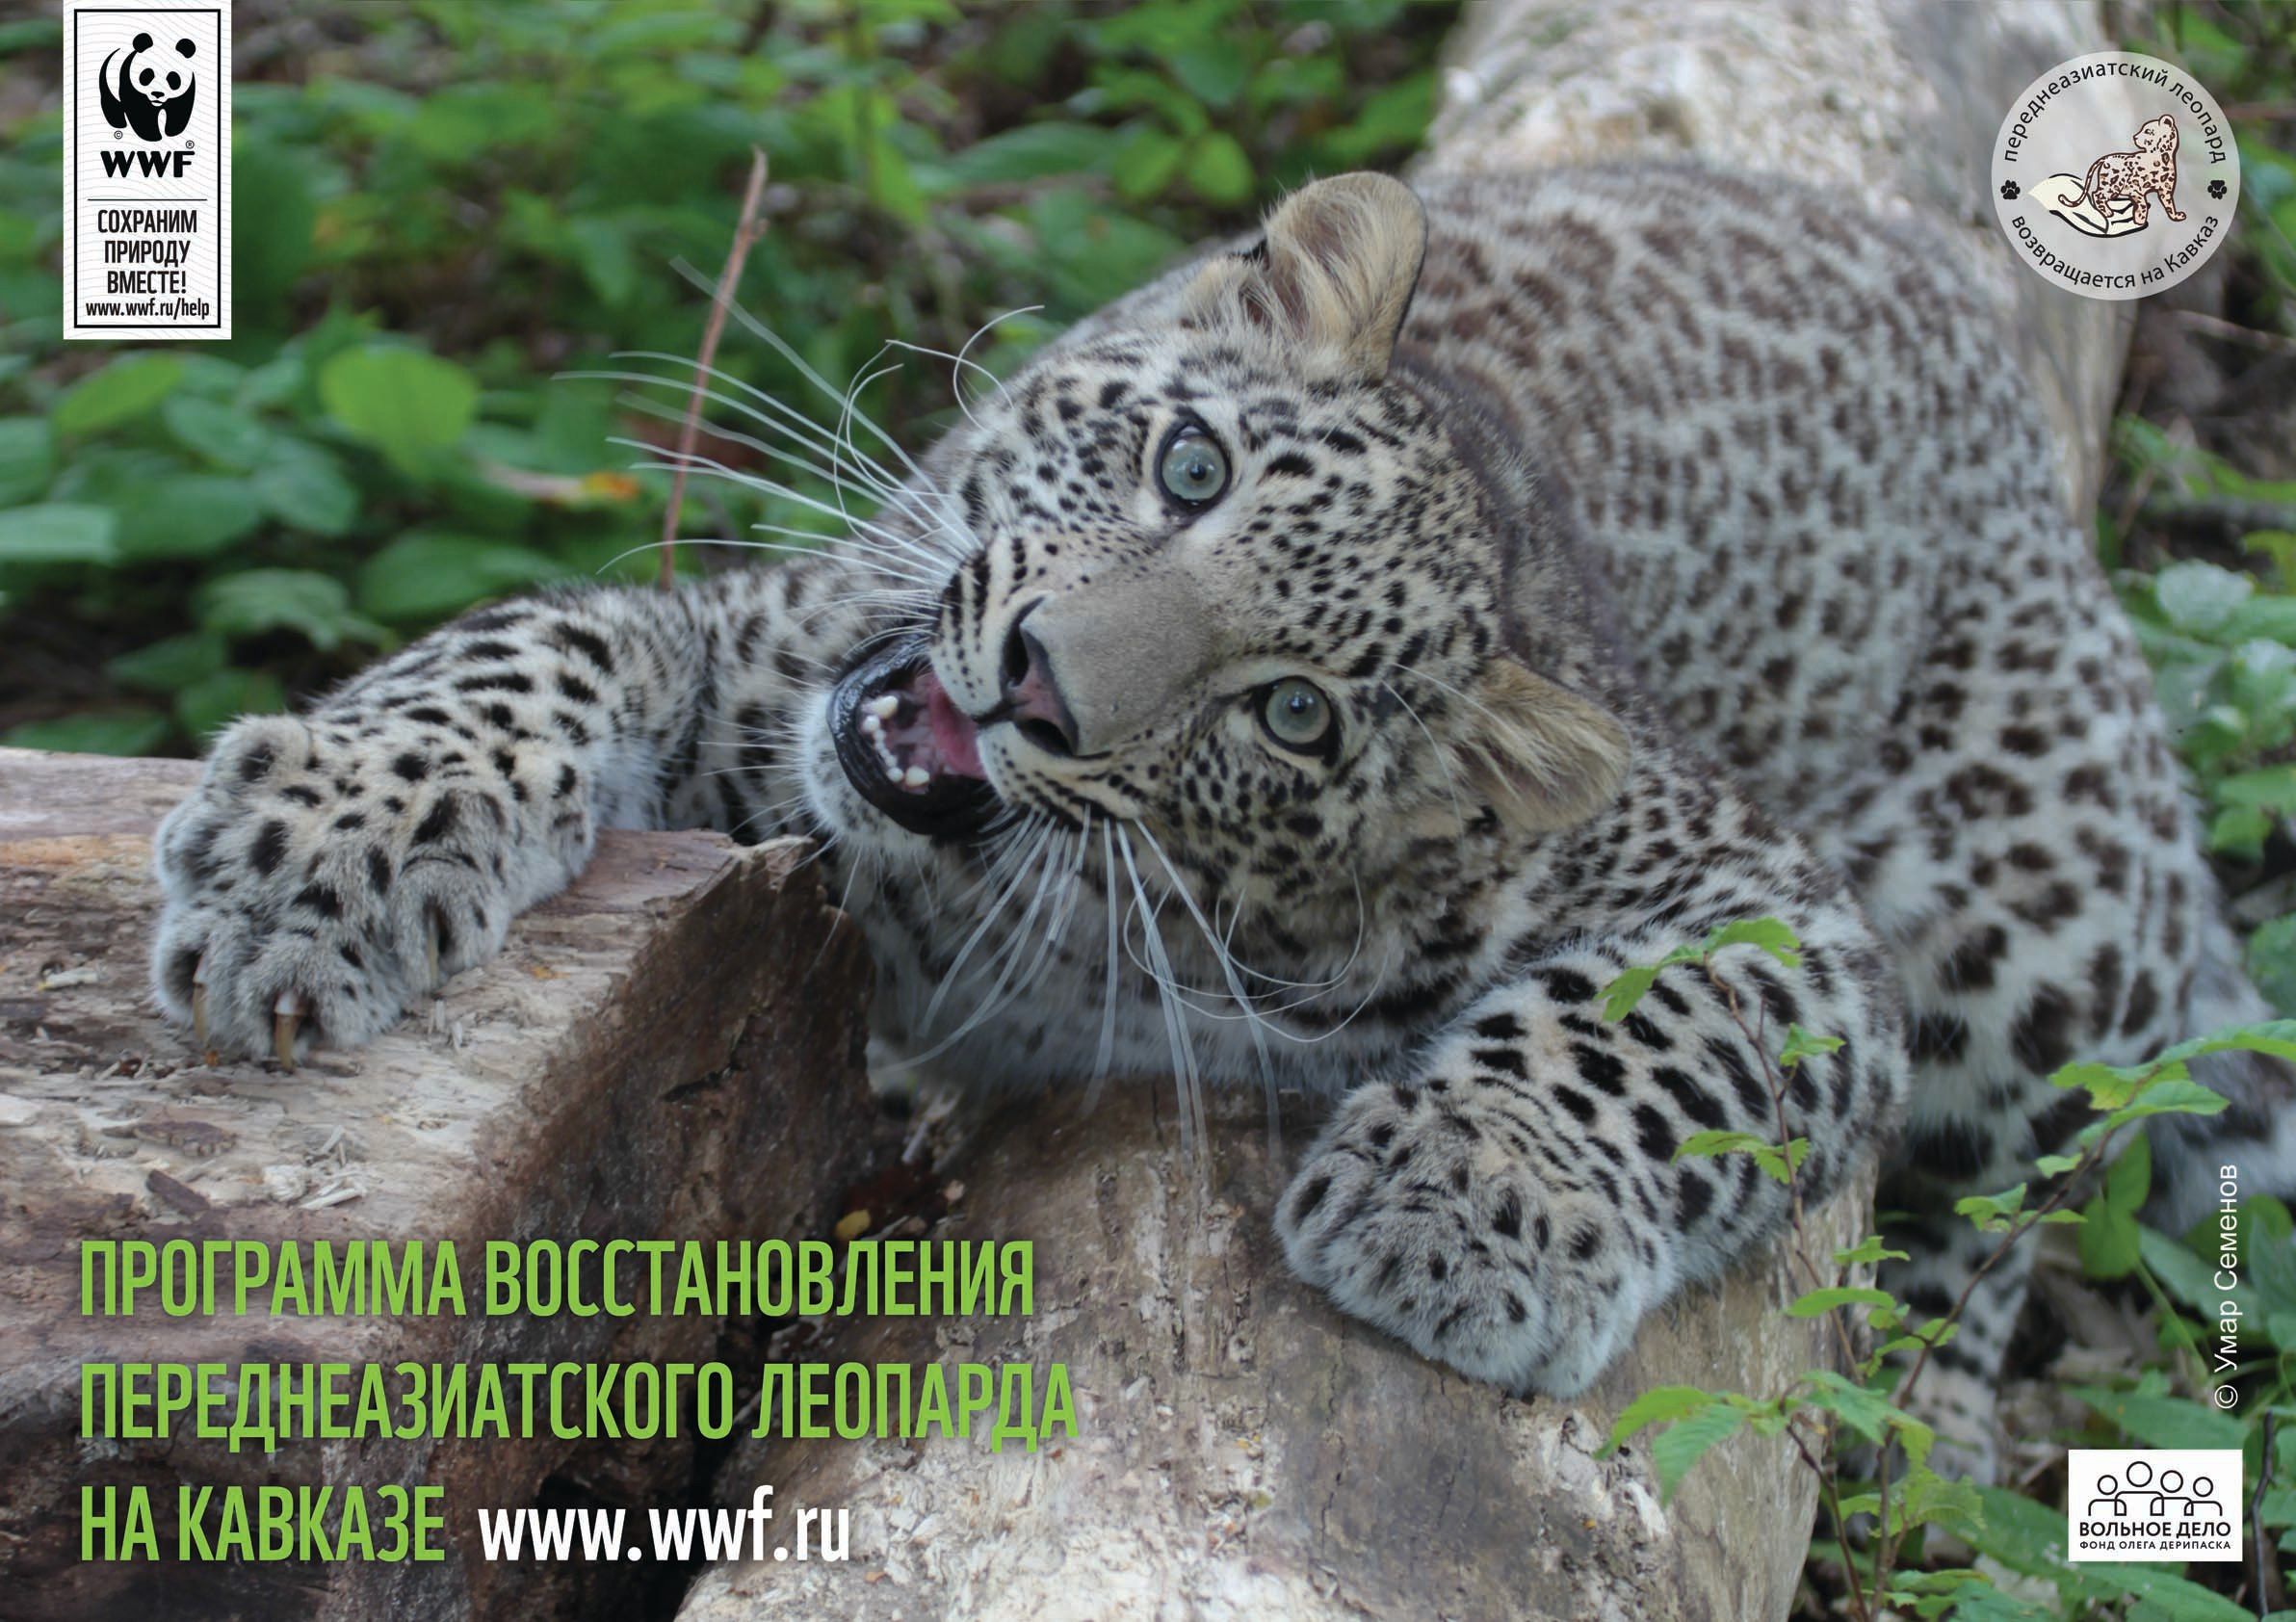 Переднеазиатский леопард вернется в Северную Осетиюп